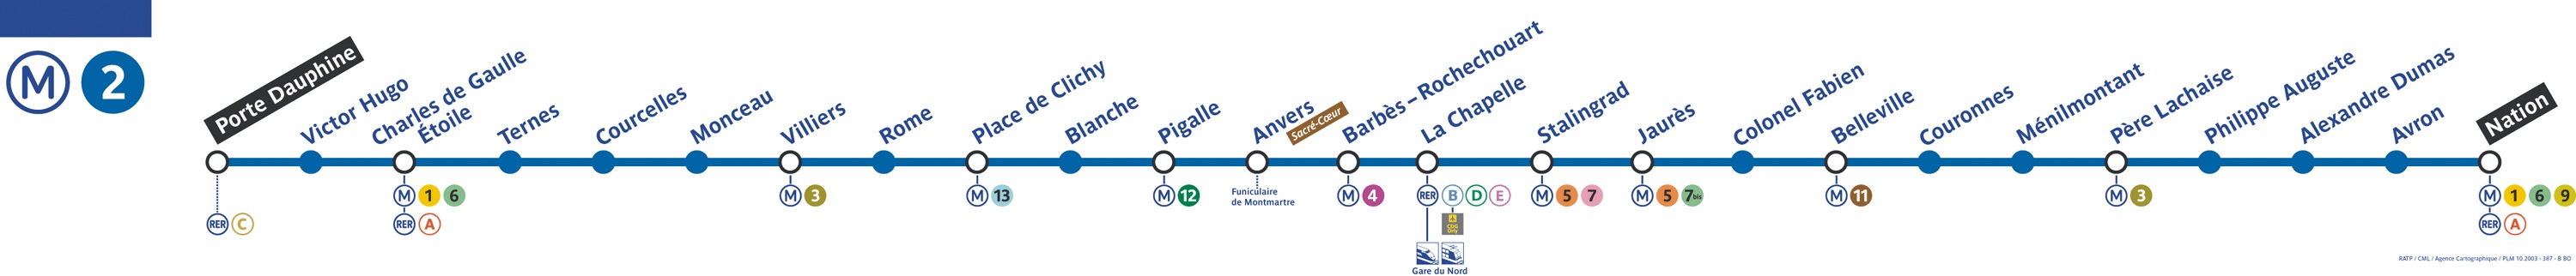 mapa da linha 2 de metro transporte público em paris